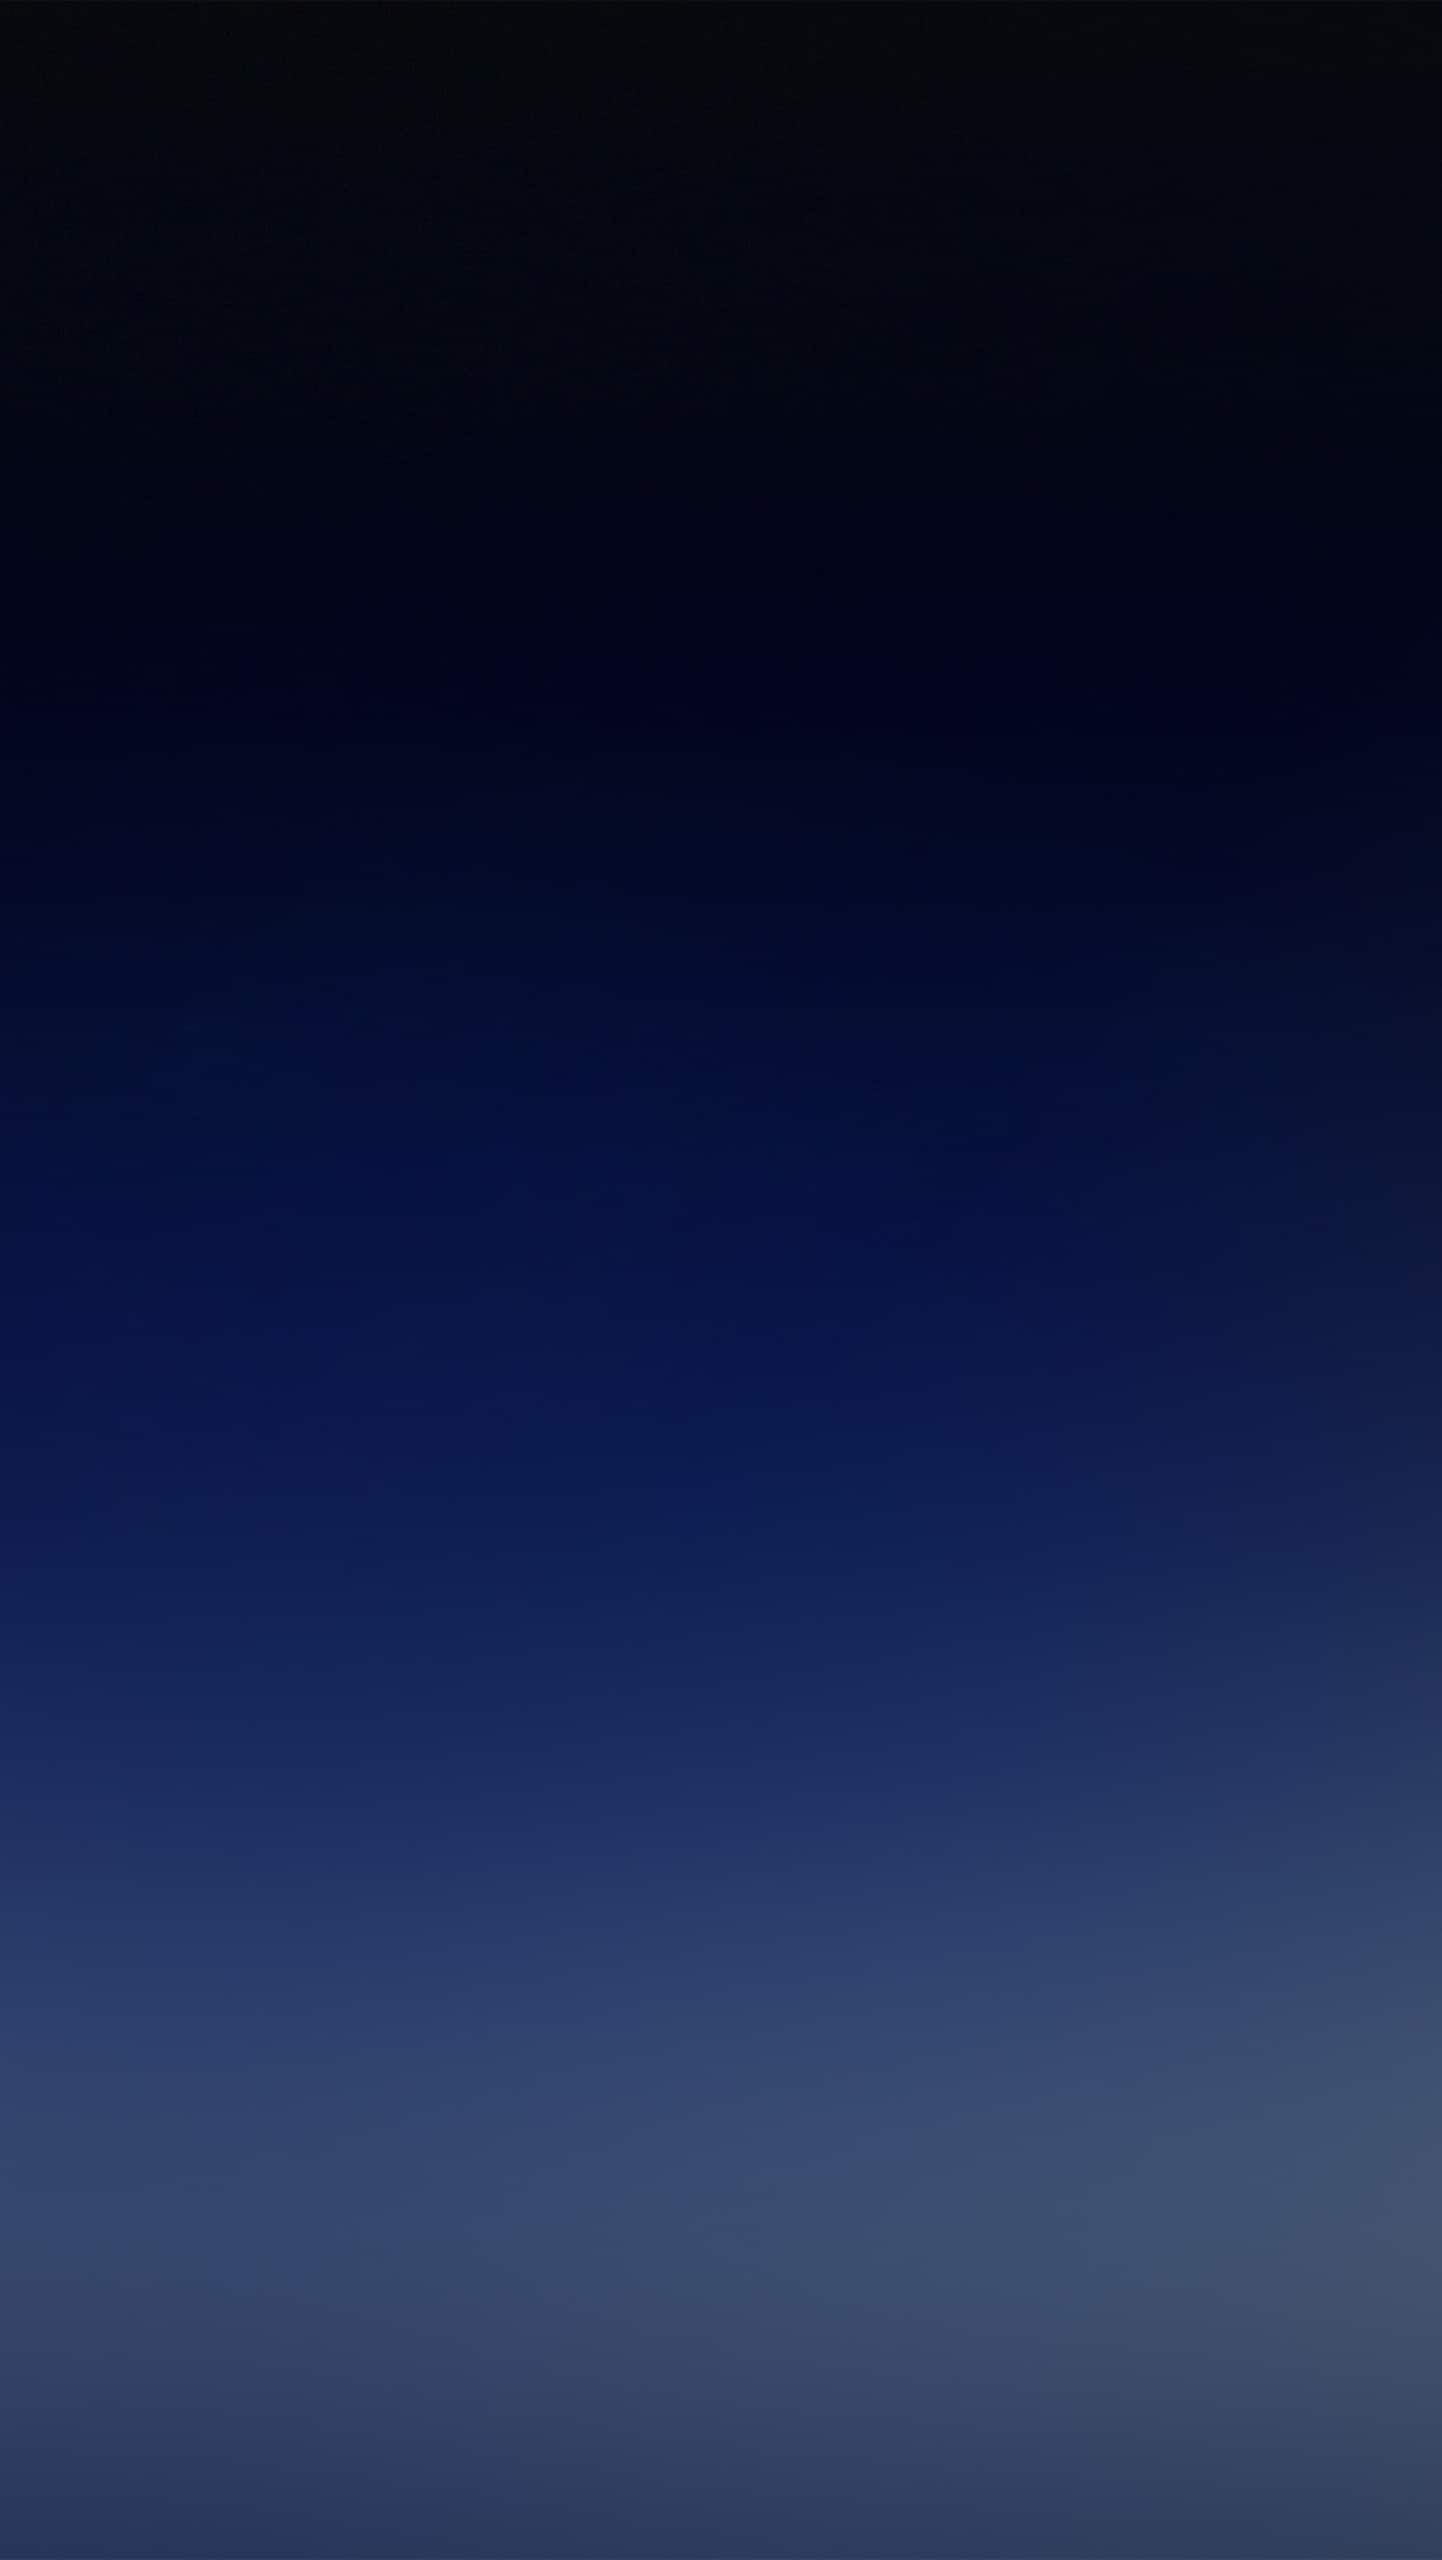 갤럭시 노트 7 재고 배경 화면,푸른,하늘,검정,분위기,짙은 청록색